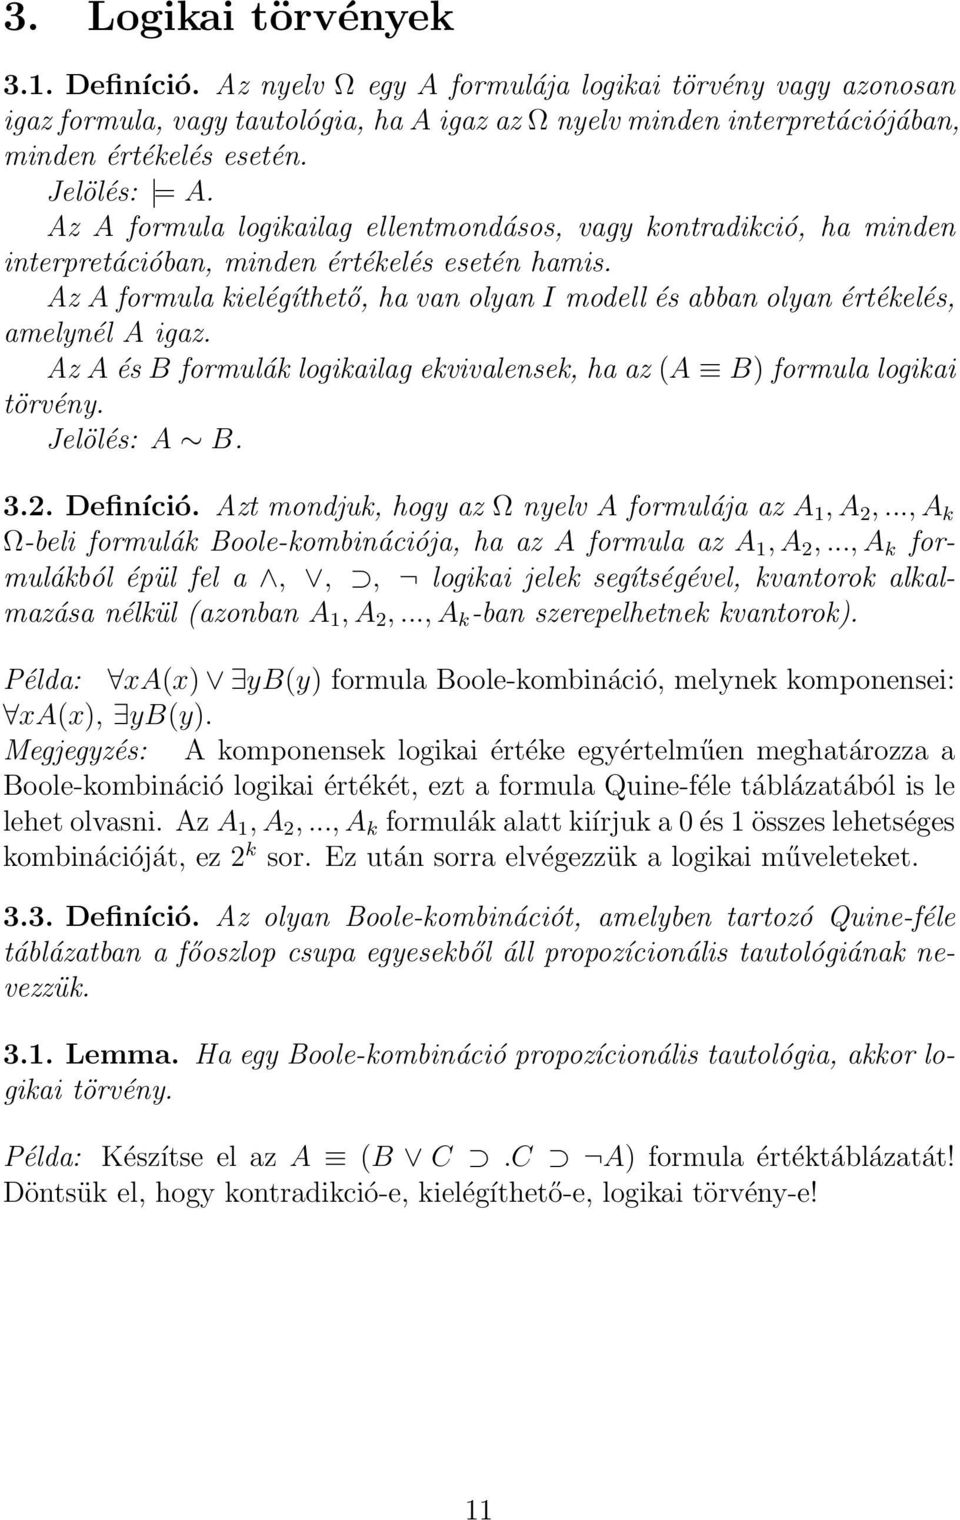 Az A formula kielégíthető, ha van olyan I modell és abban olyan értékelés, amelynél A igaz. Az A és B formulák logikailag ekvivalensek, ha az (A B) formula logikai törvény. Jelölés: A B. 3.2.